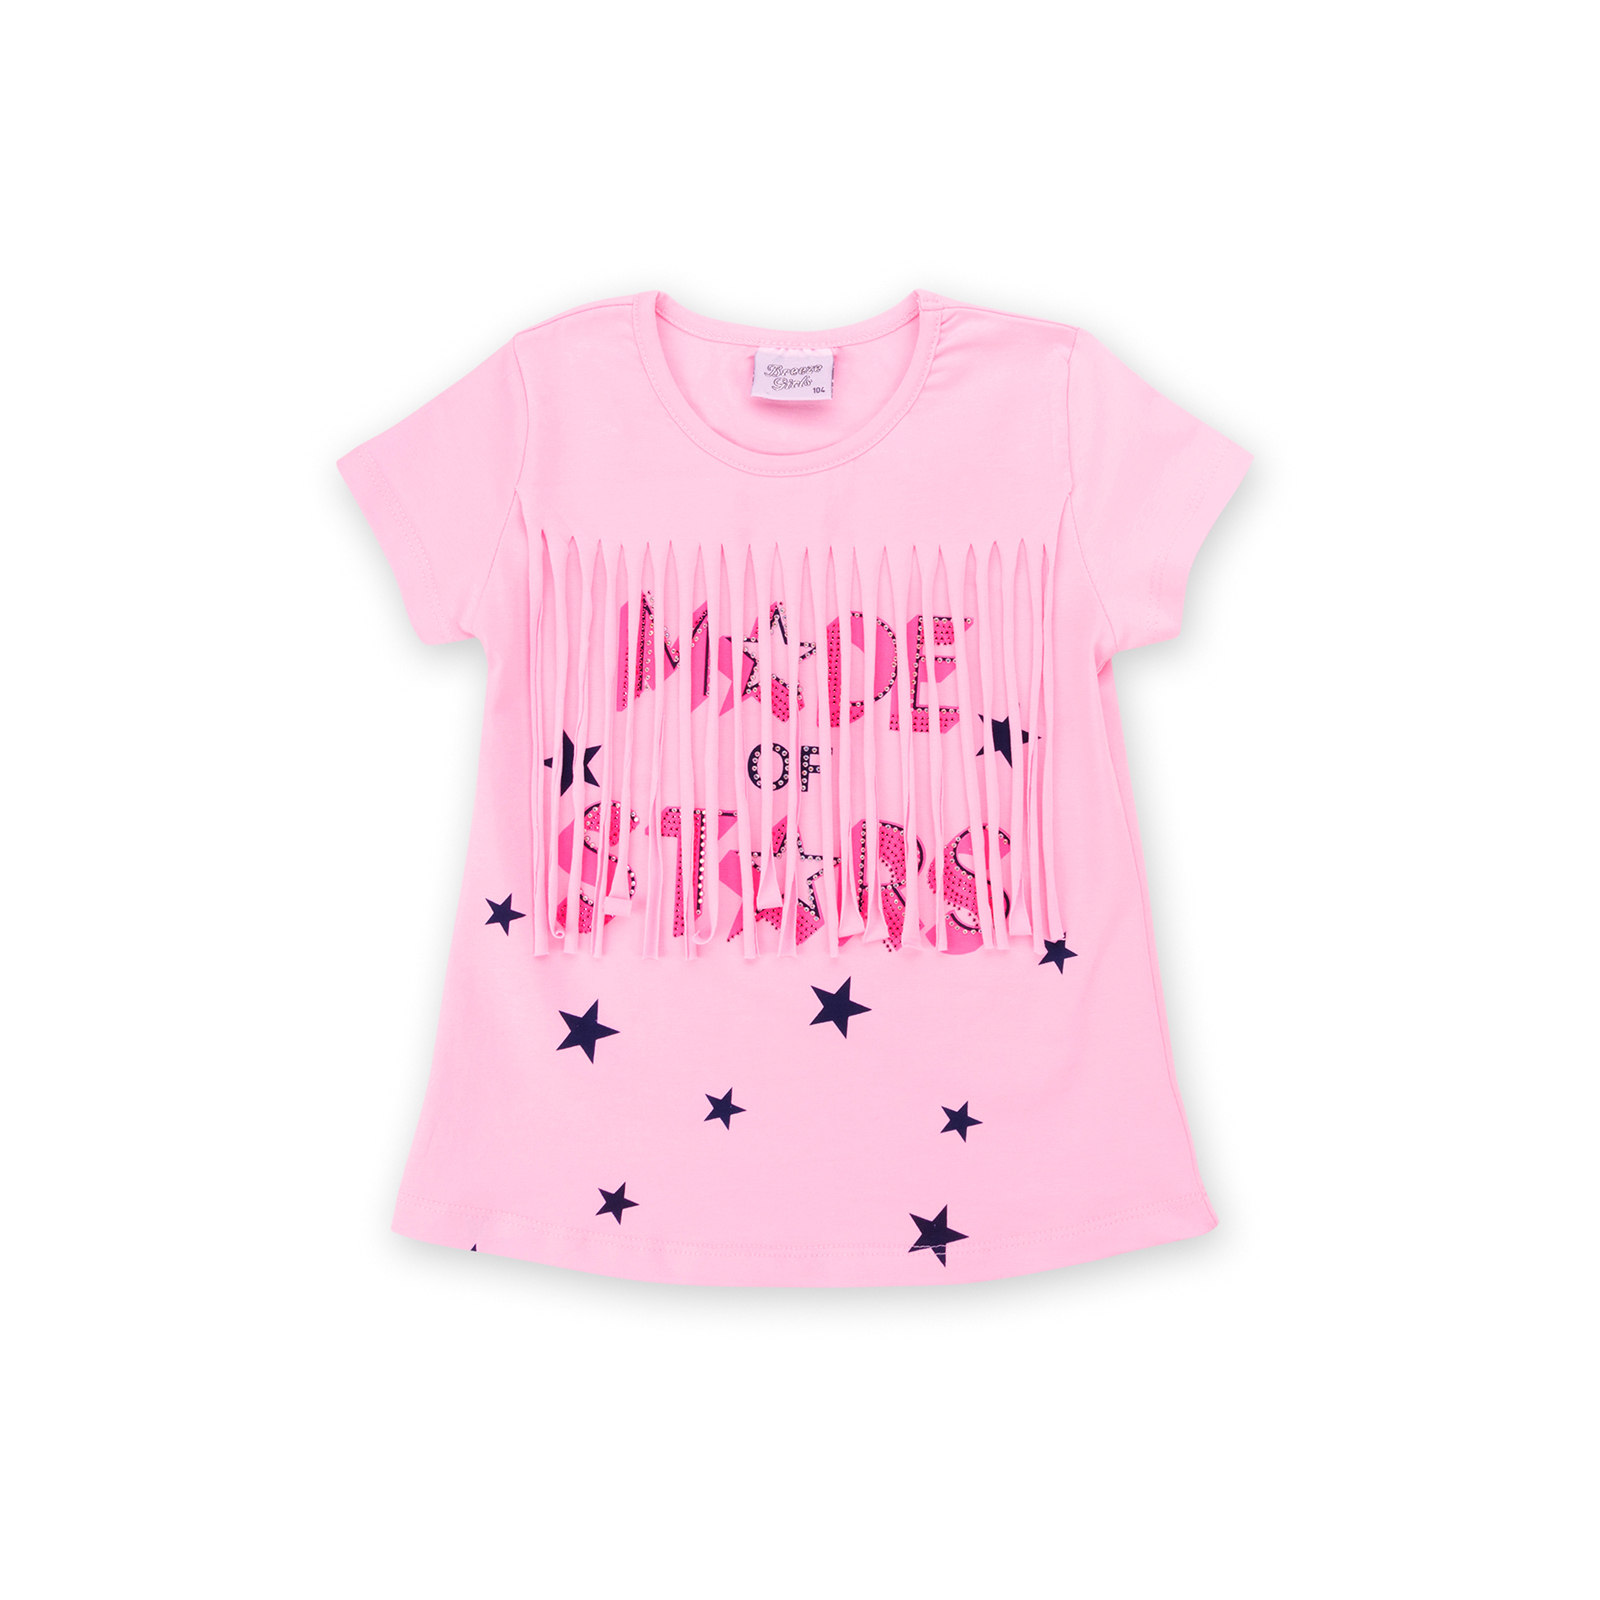 Набор детской одежды Breeze футболка со звездочками с шортами (9036-110G-pink) изображение 2